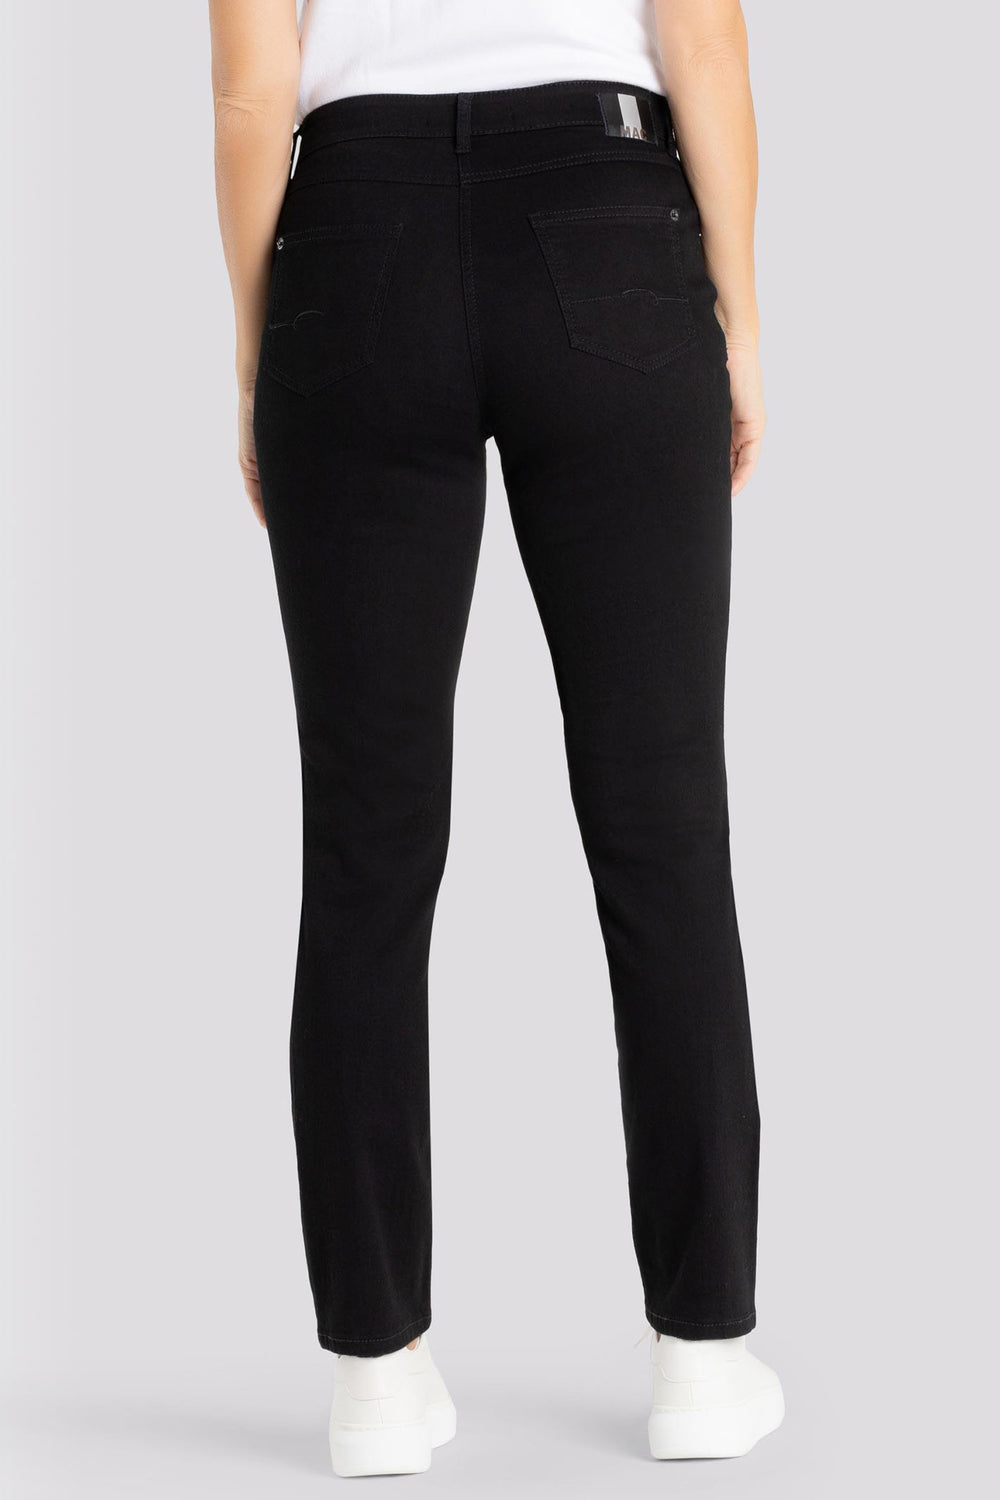 Mac Jeans Melanie Black Perfect Fit Forever Denim 5040-87-0380L D999 - Shirley Allum Boutique